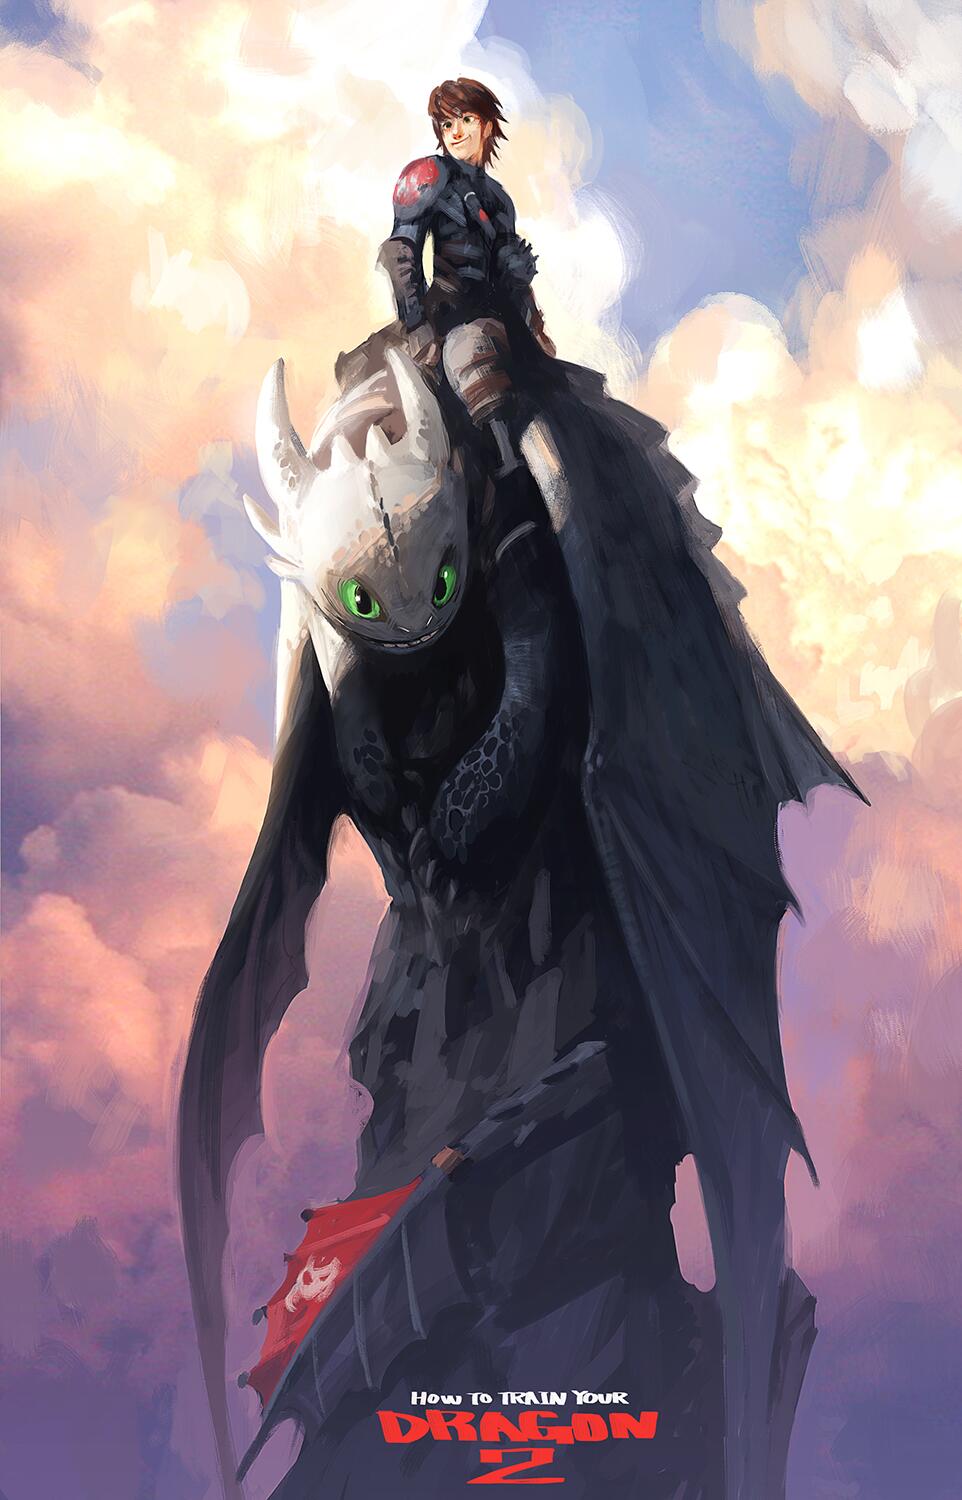 大屋和博 Kazuhiro Oya on Twitter: "ヒックとドラゴン2ファンアート第二弾描いてみました。今回はちゃんと2仕様のヒック